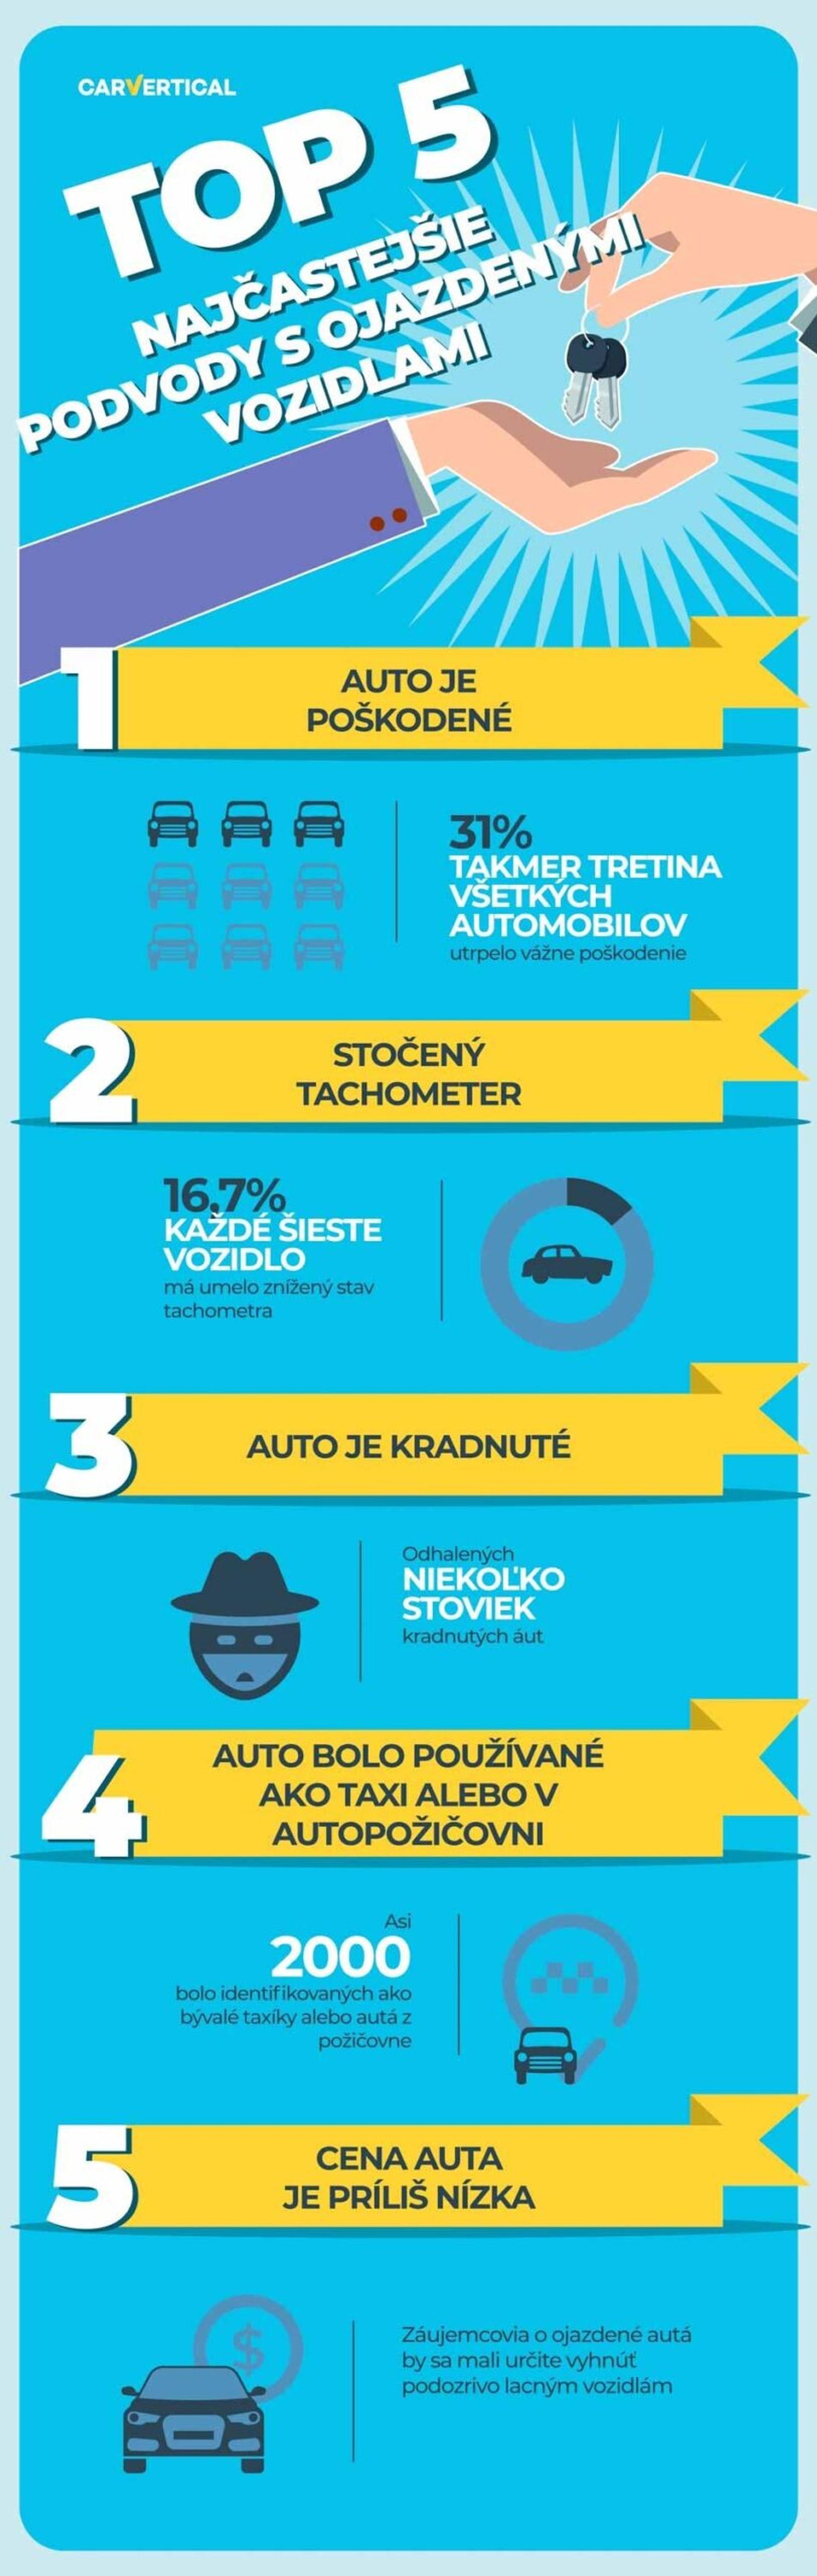 Top 5 najčastejšie podvody s ojazdenymi vozidlami